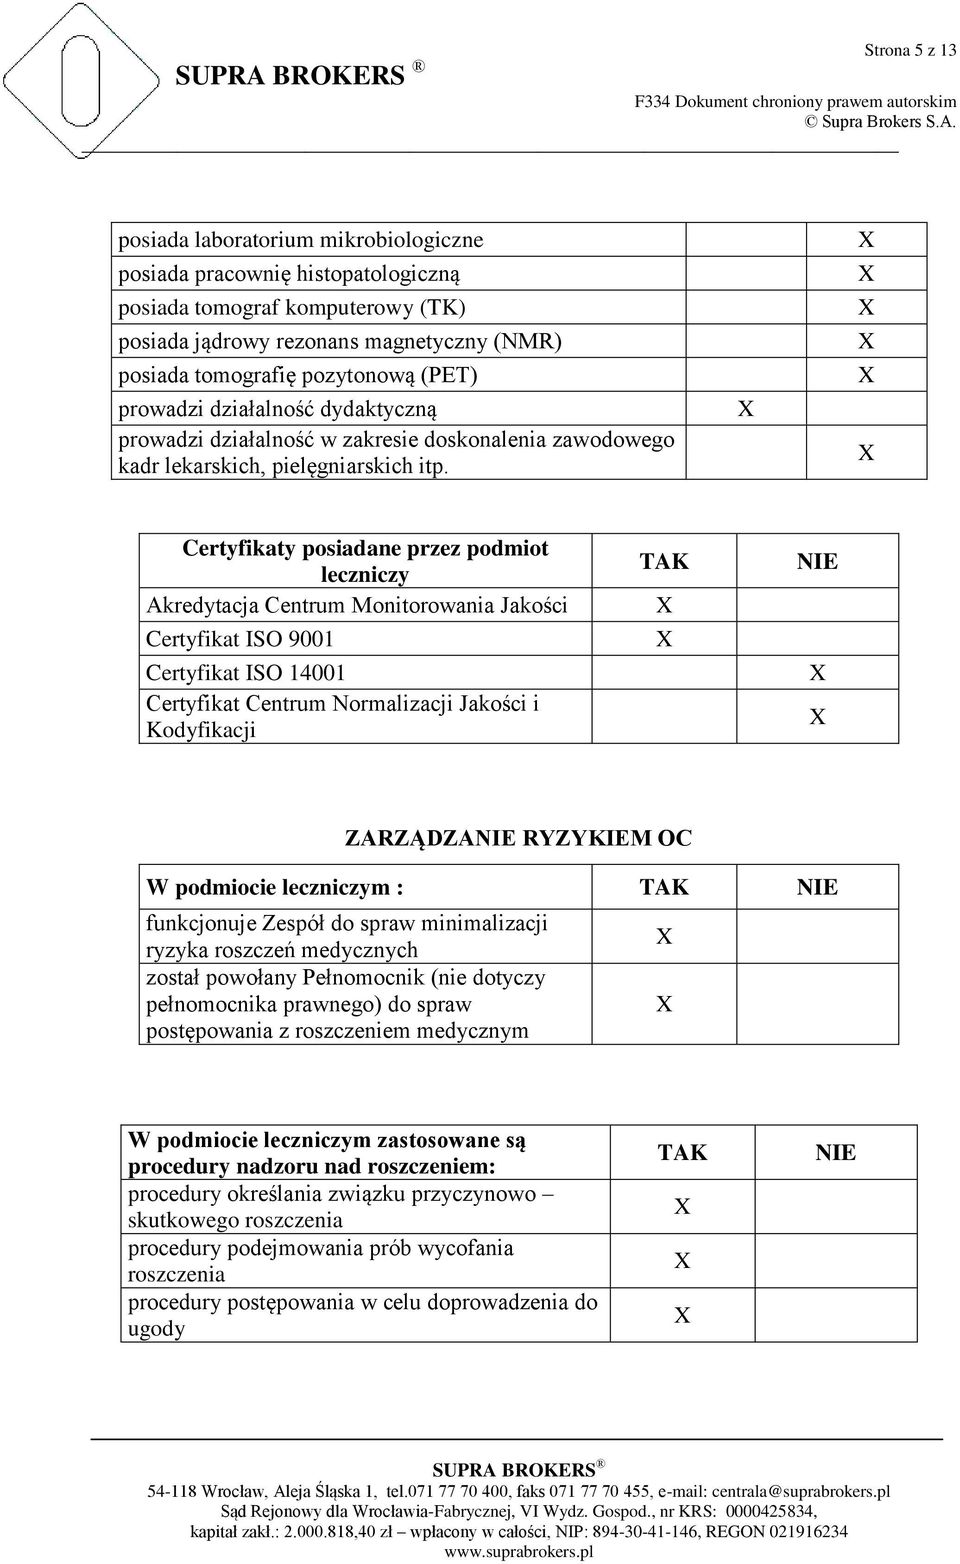 Certyfikaty posiadane przez podmiot leczniczy Akredytacja Centrum Monitorowania Jakości Certyfikat ISO 9001 Certyfikat ISO 14001 Certyfikat Centrum Normalizacji Jakości i Kodyfikacji TAK NIE